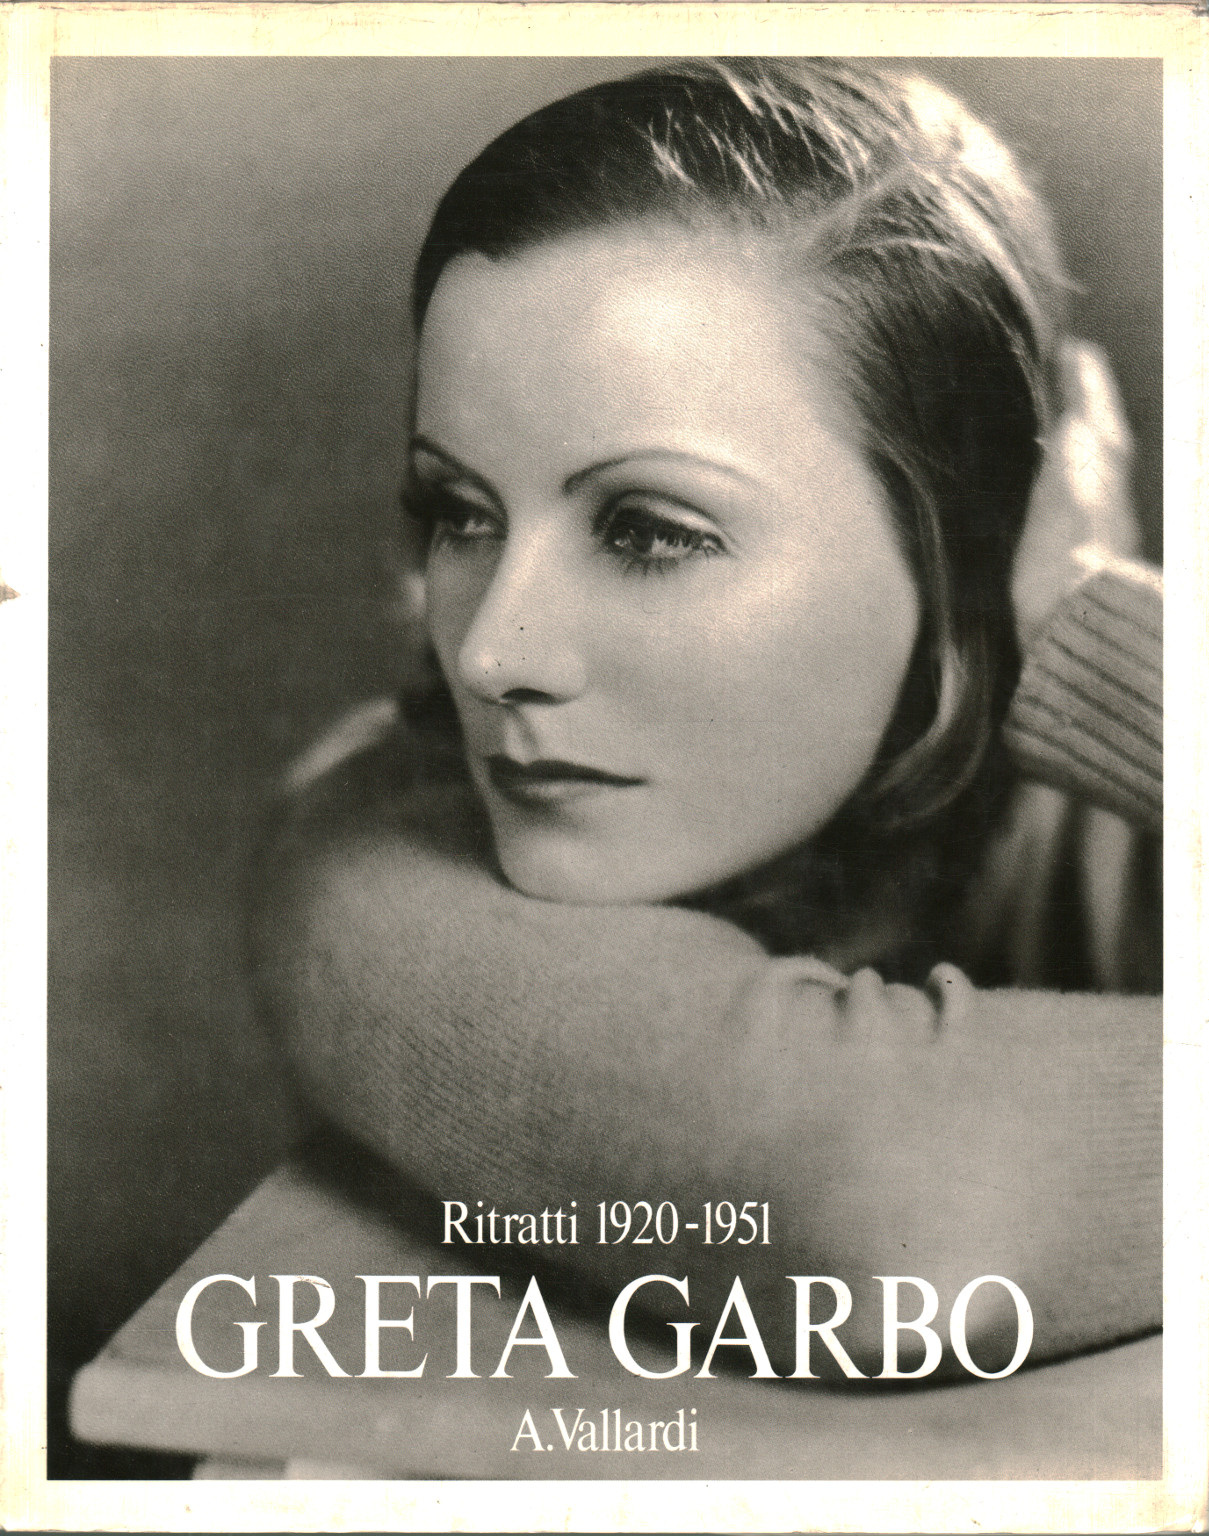 Greta Garbo. Porträts 1920-1951, AA.VV.